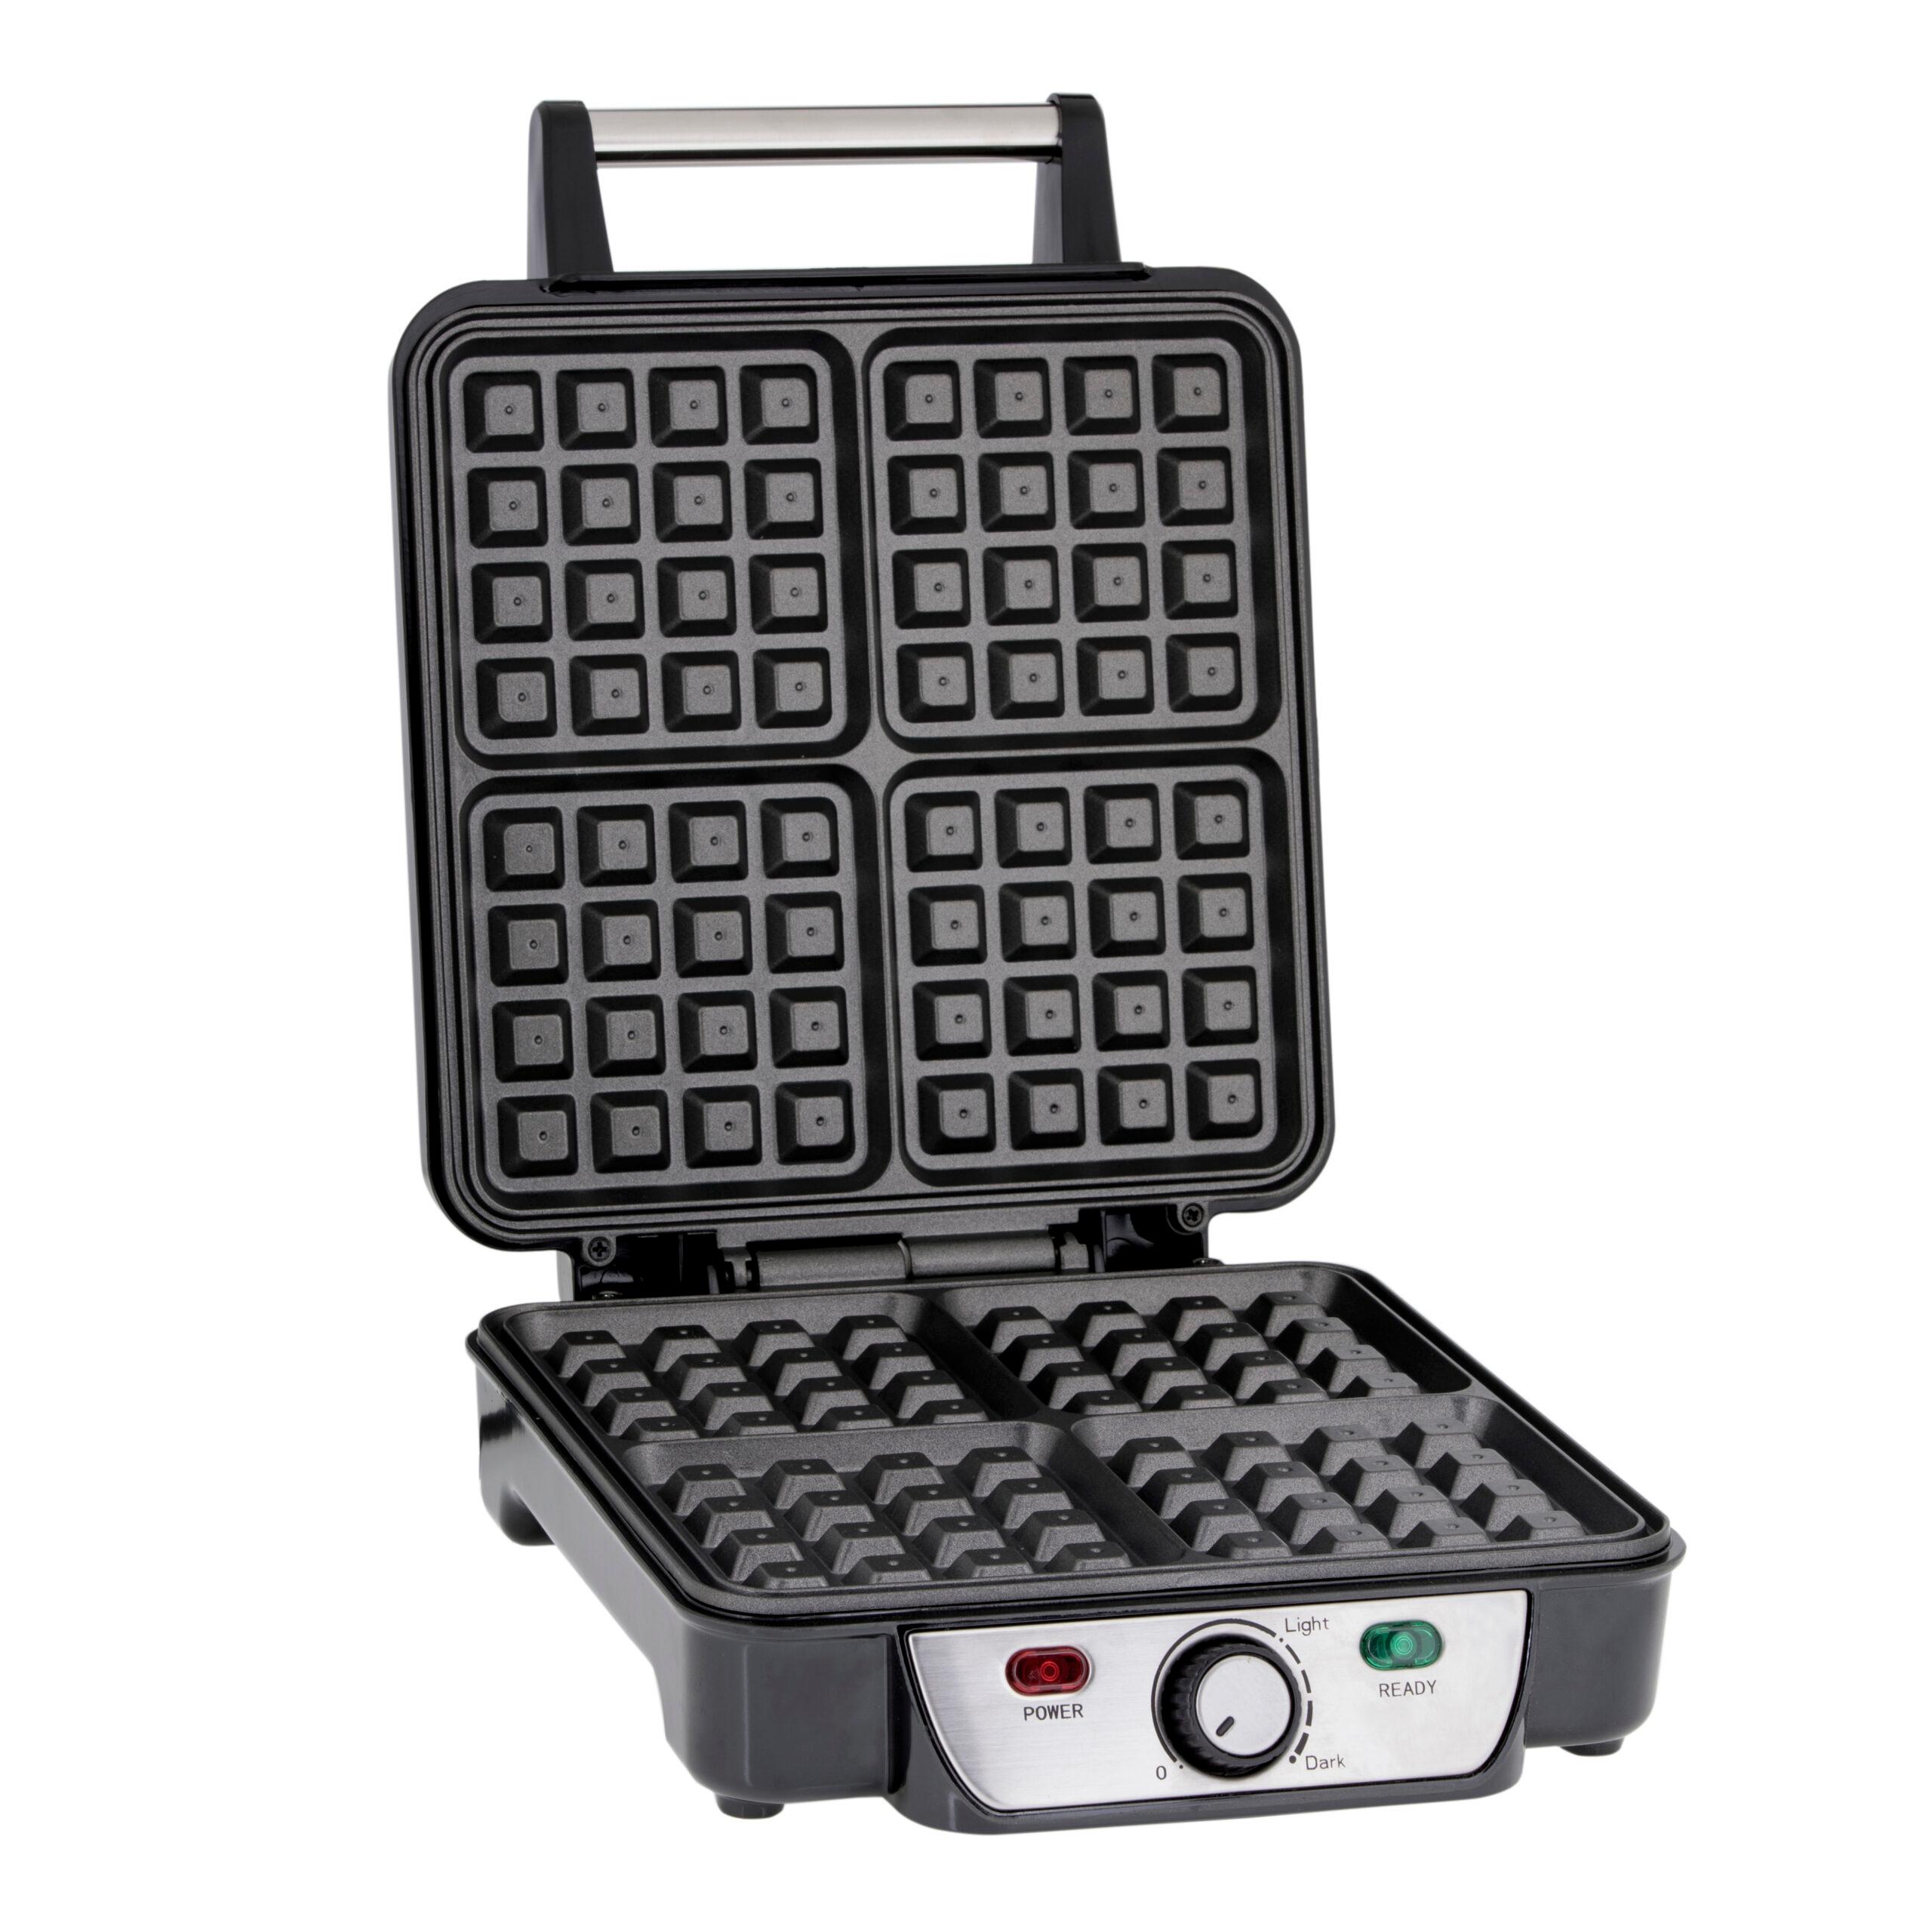 جهاز الوافل 4 قطع 1100 واط مقاوم للإلتصاق جيباس Geepas Waffle Maker